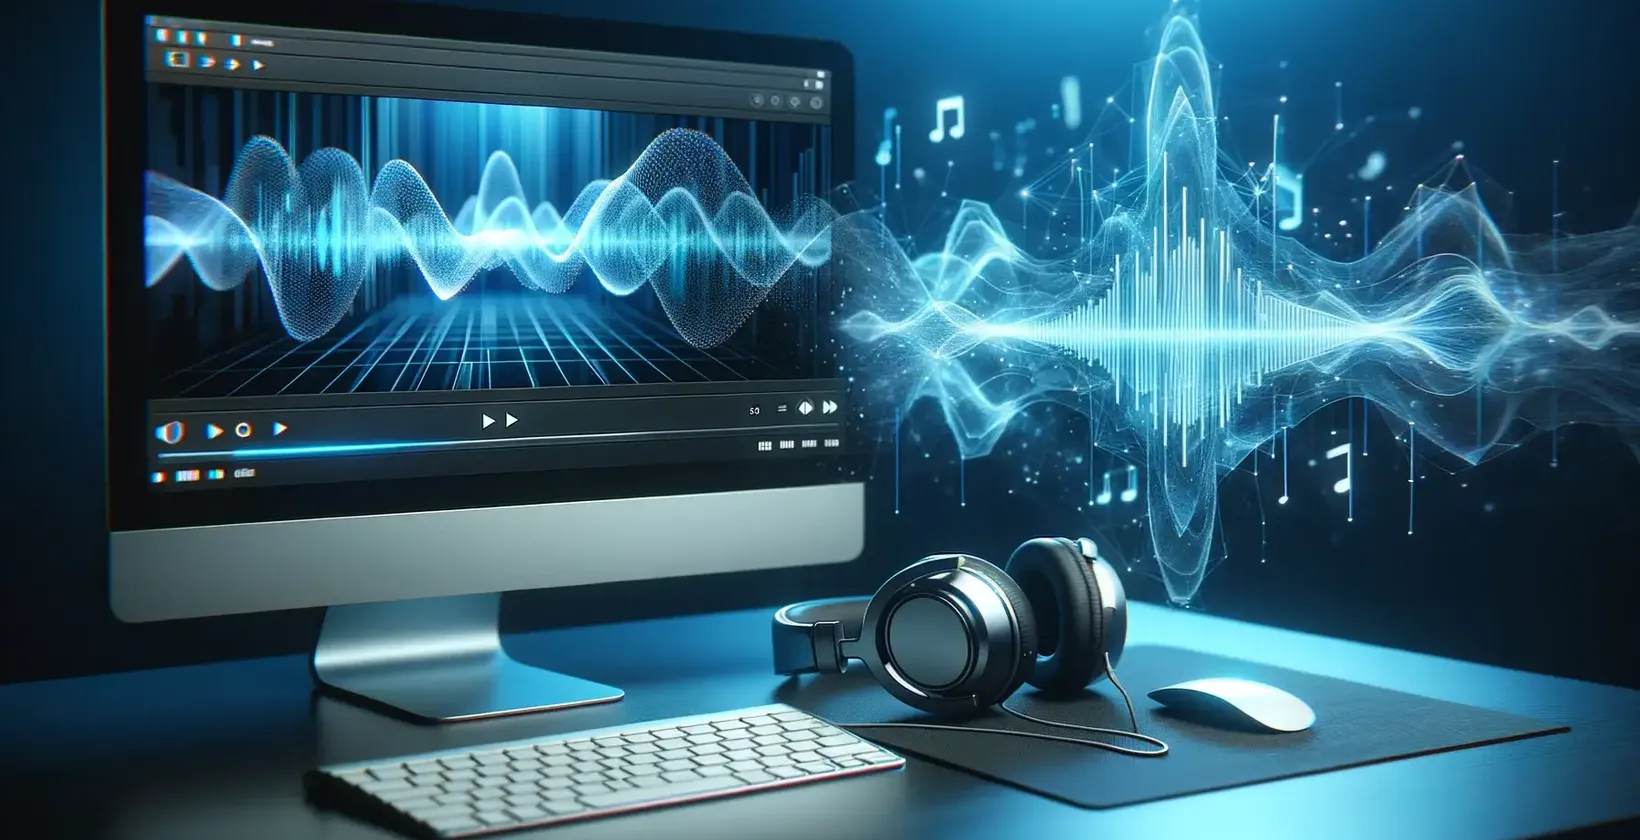 Pokročilý software pro přepis zvuku reprezentovaný monitorem s průběhy zvuku a sluchátky